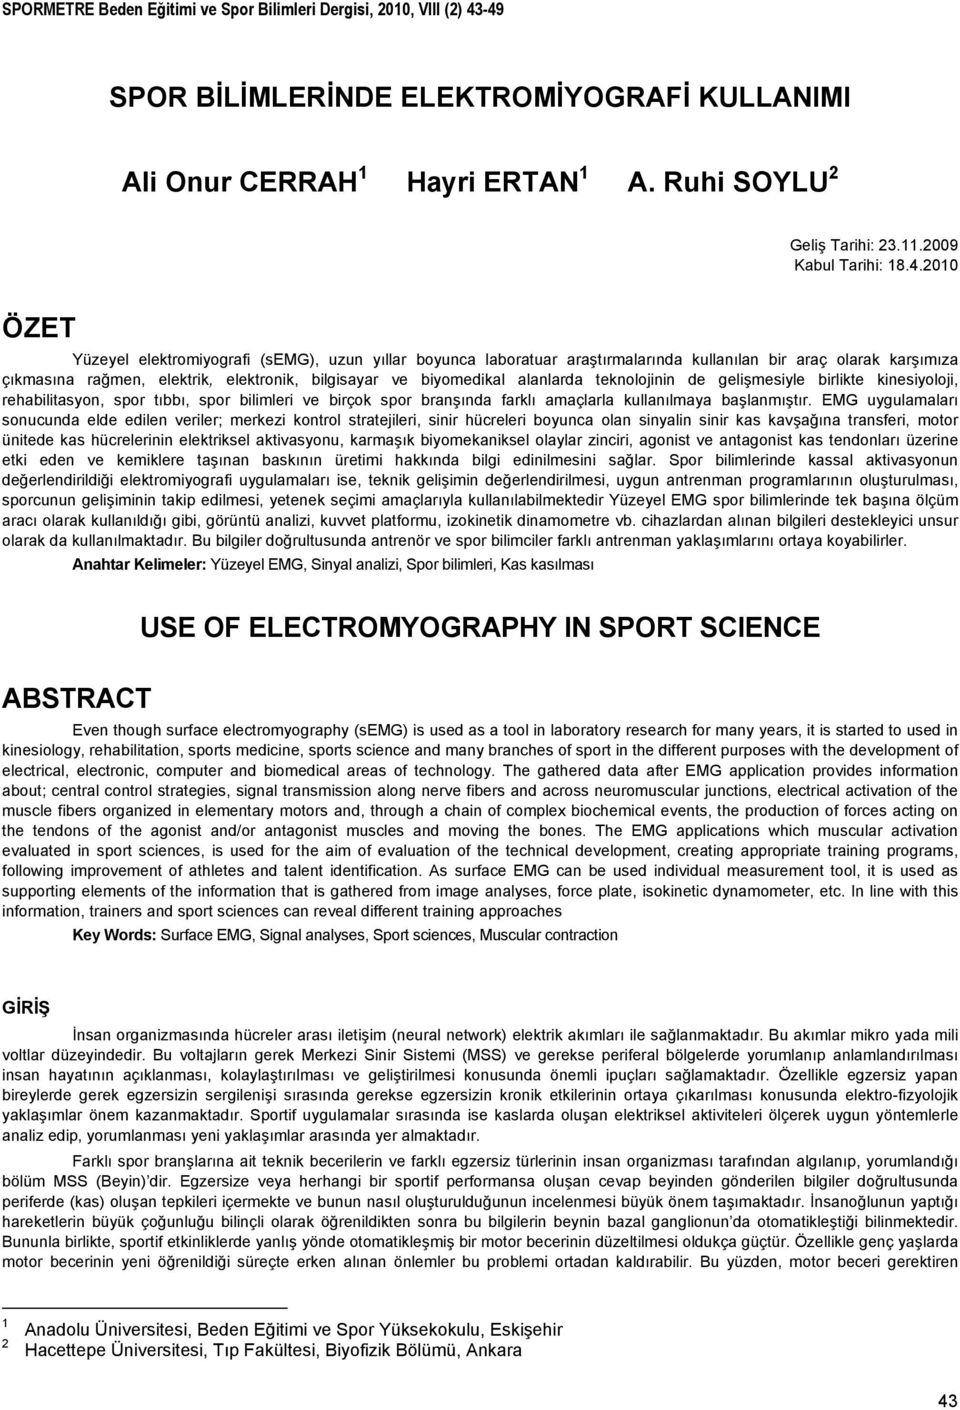 2010 ÖZET Yüzeyel elektromiyografi (semg), uzun yıllar boyunca laboratuar araştırmalarında kullanılan bir araç olarak karşımıza çıkmasına rağmen, elektrik, elektronik, bilgisayar ve biyomedikal